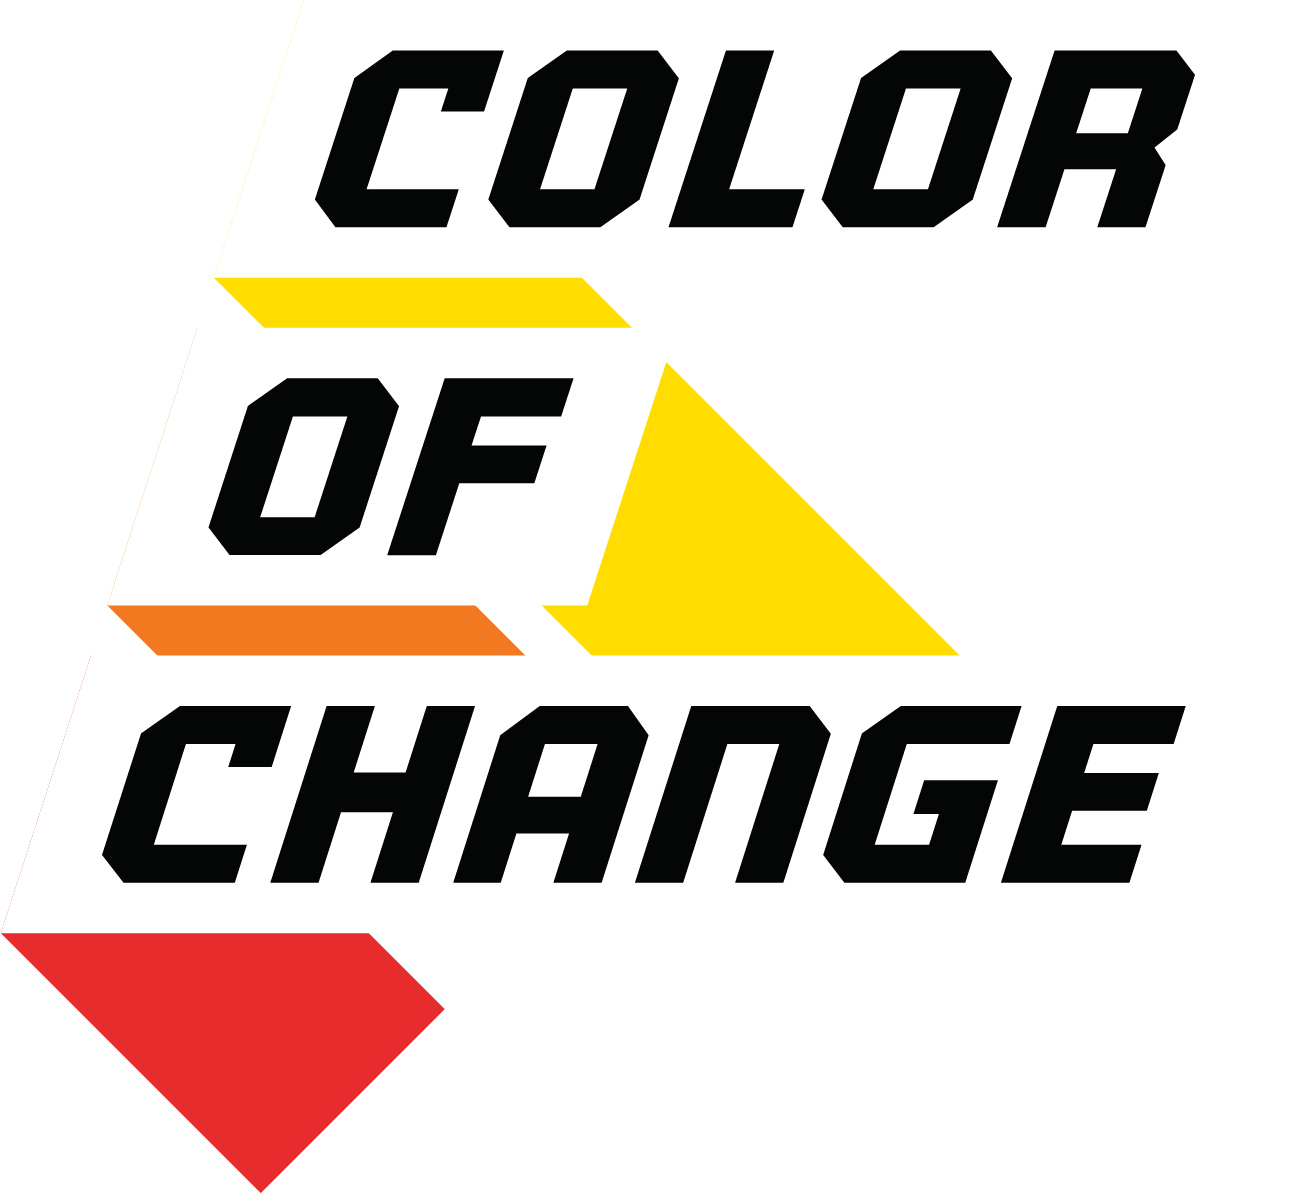 Color of Change Logo